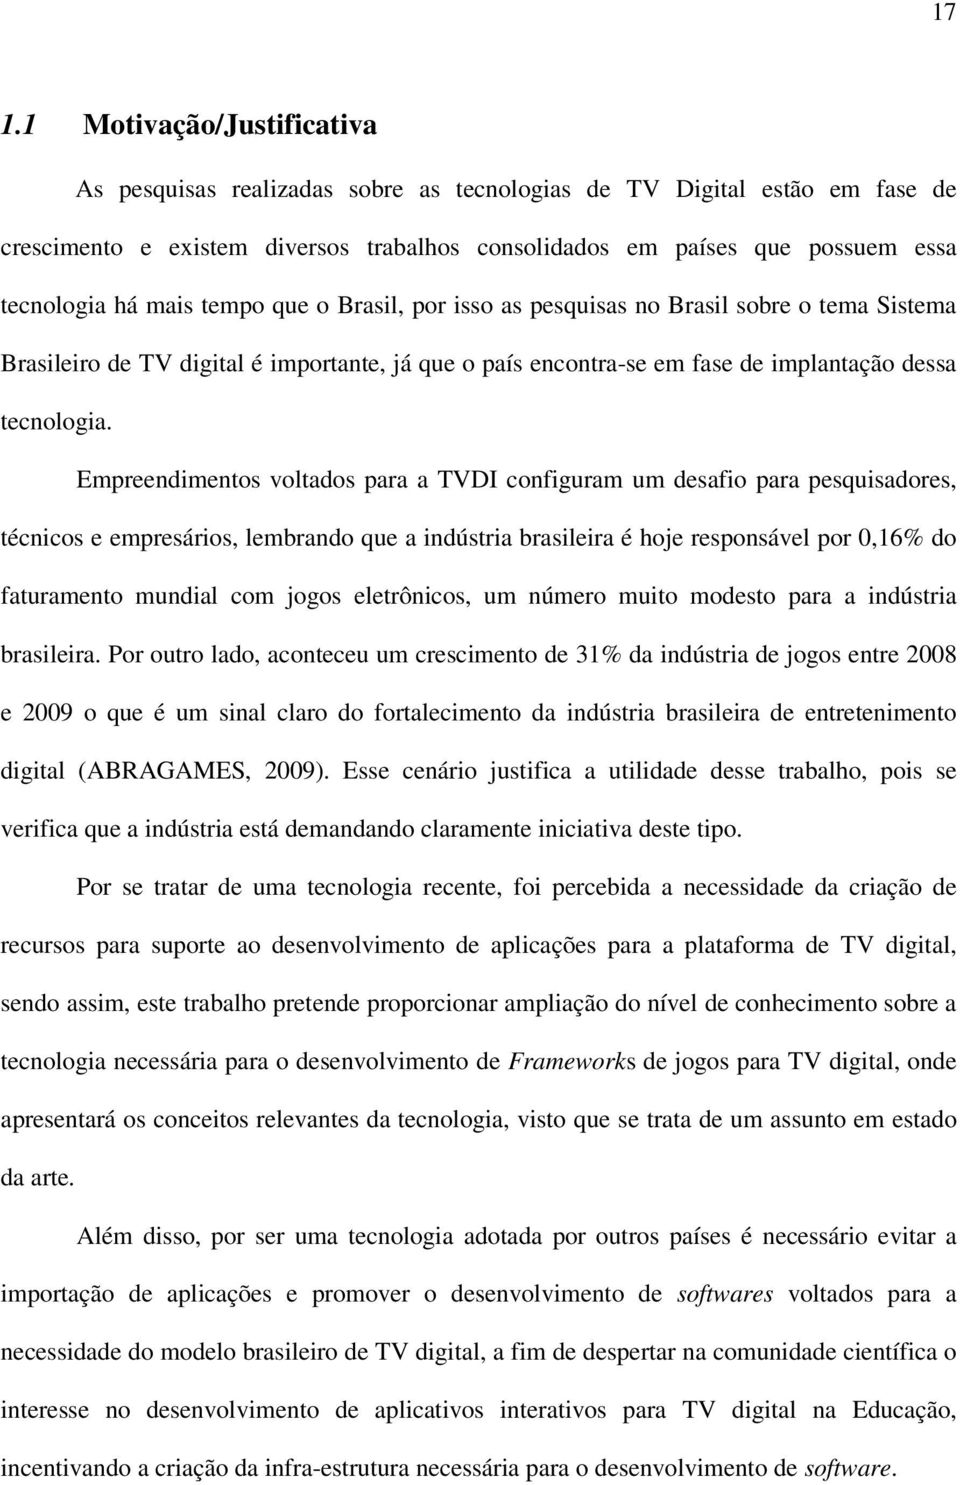 Empreendimentos voltados para a TVDI configuram um desafio para pesquisadores, técnicos e empresários, lembrando que a indústria brasileira é hoje responsável por 0,16% do faturamento mundial com